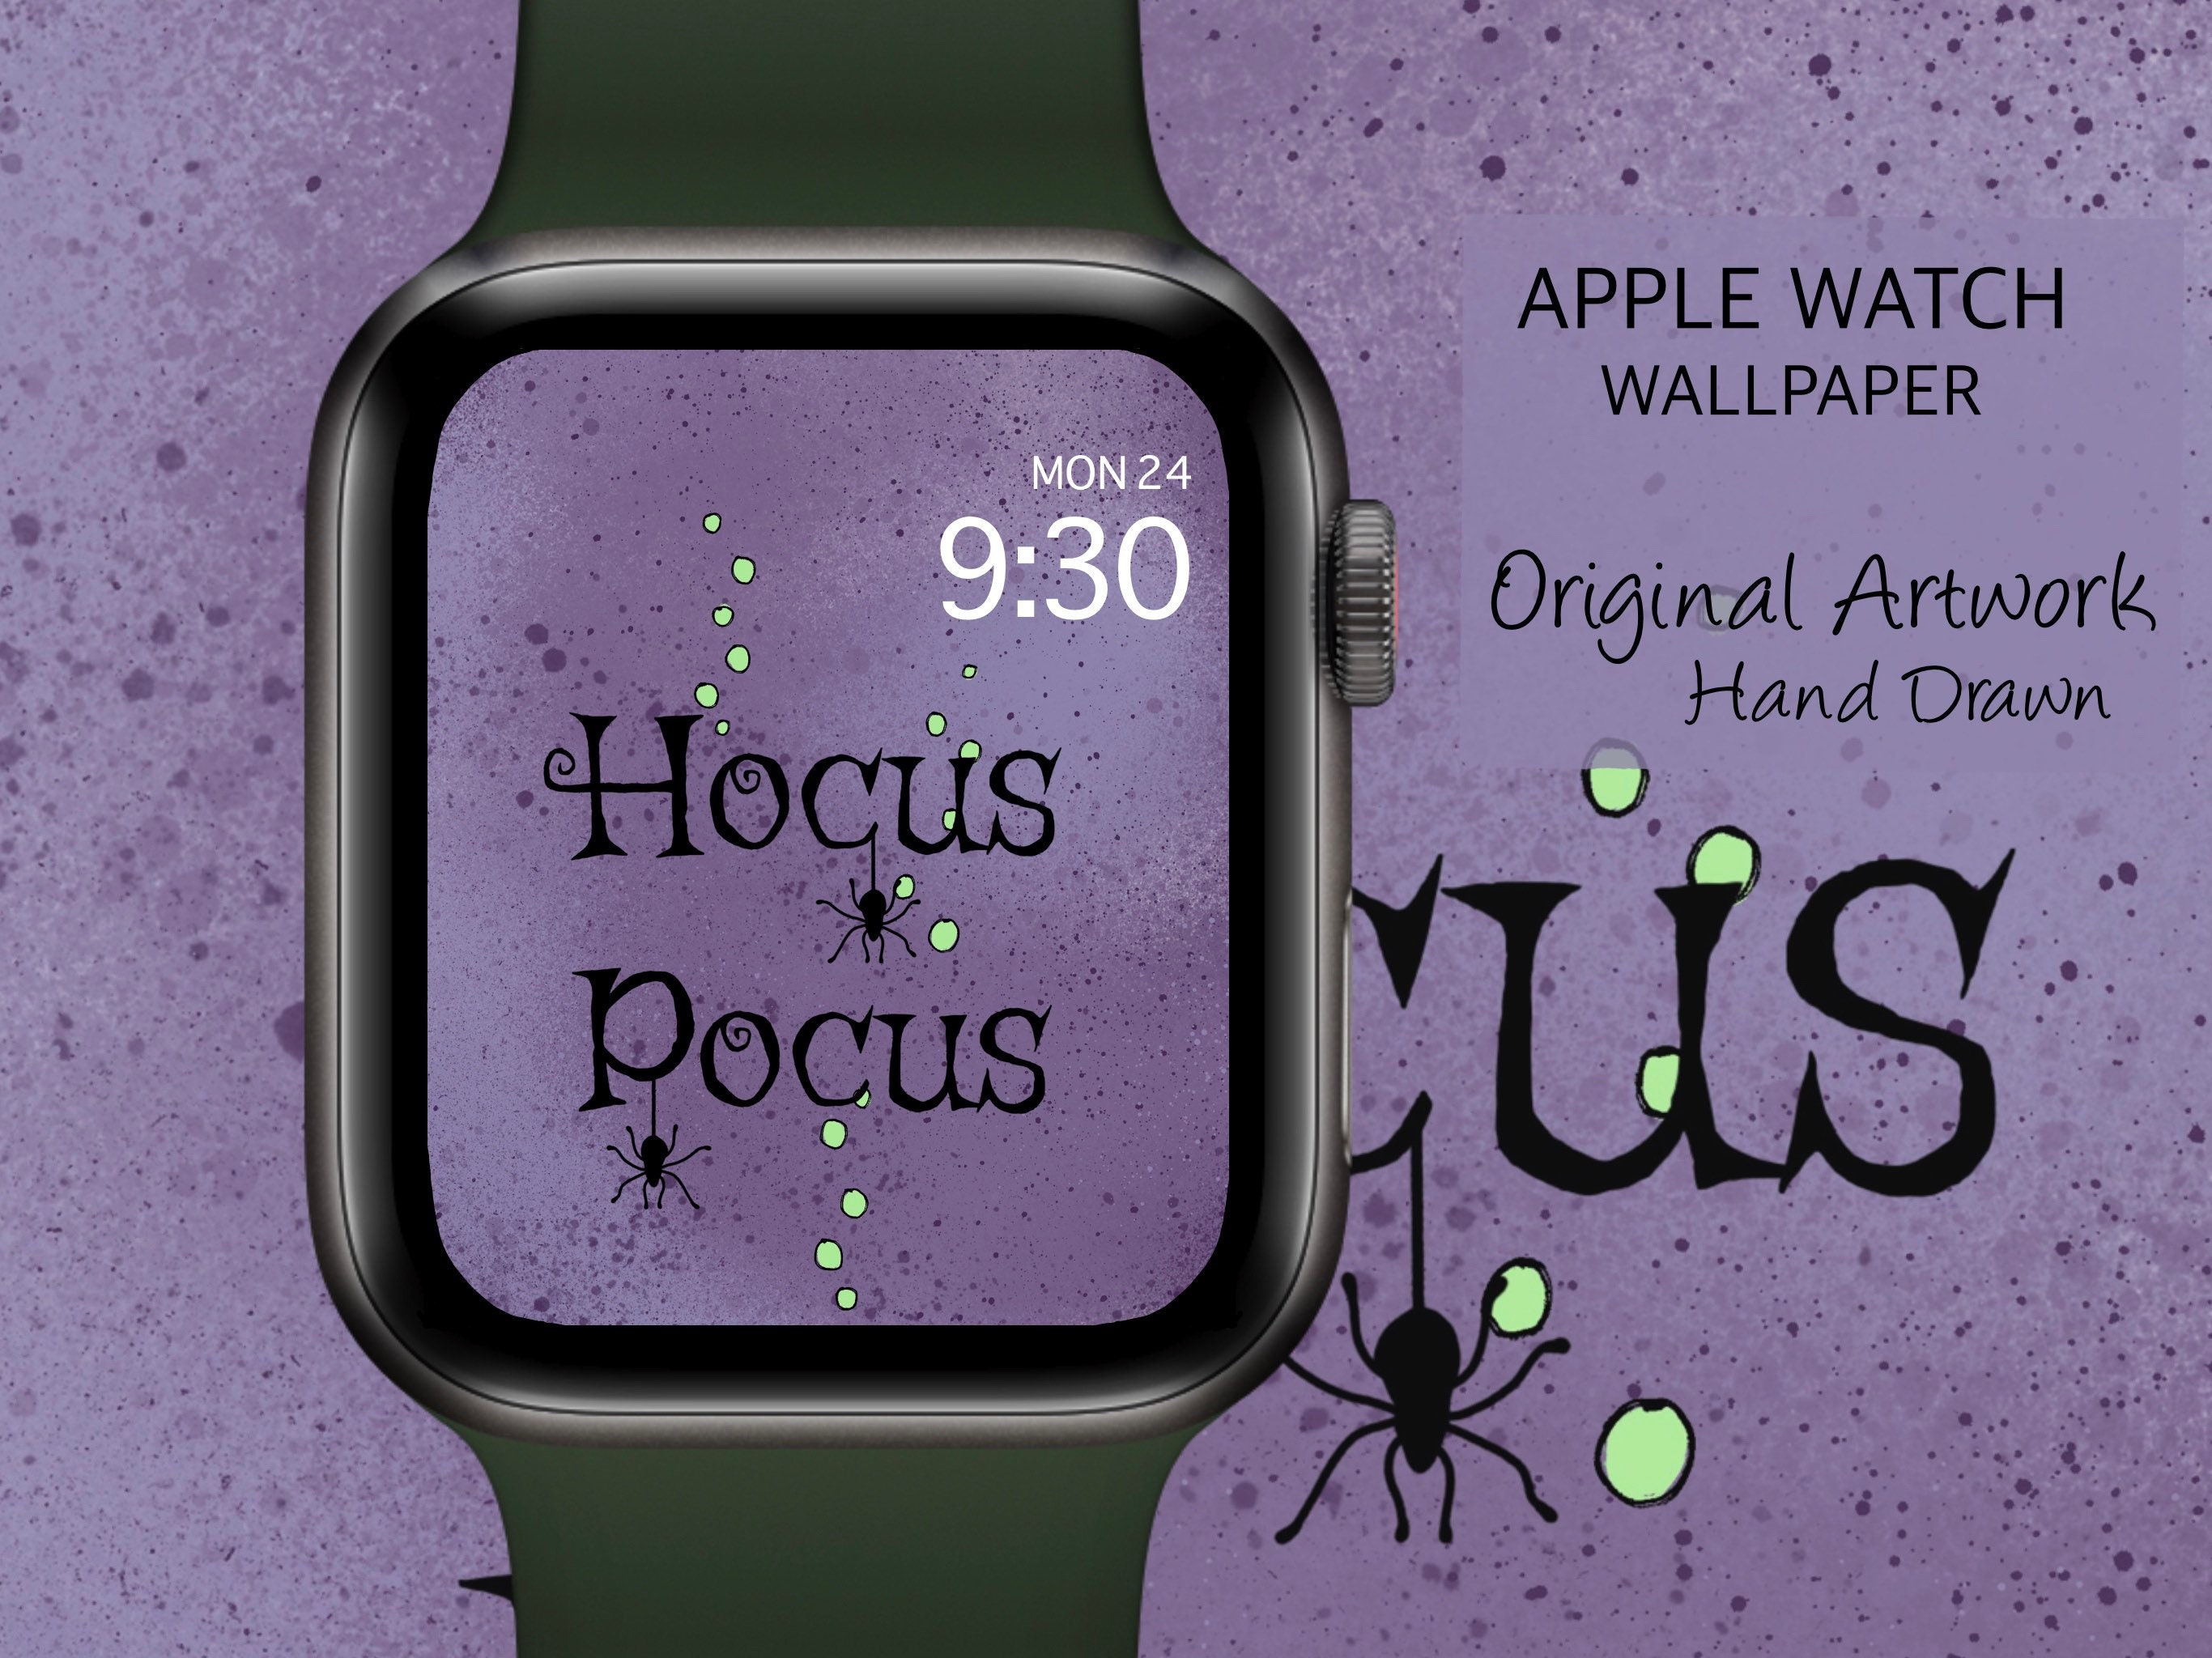 Halloween Apple Watch Wallpaper Apple Watch Faces Halloween  Etsy  Apple  watch wallpaper Apple watch Apple watch faces